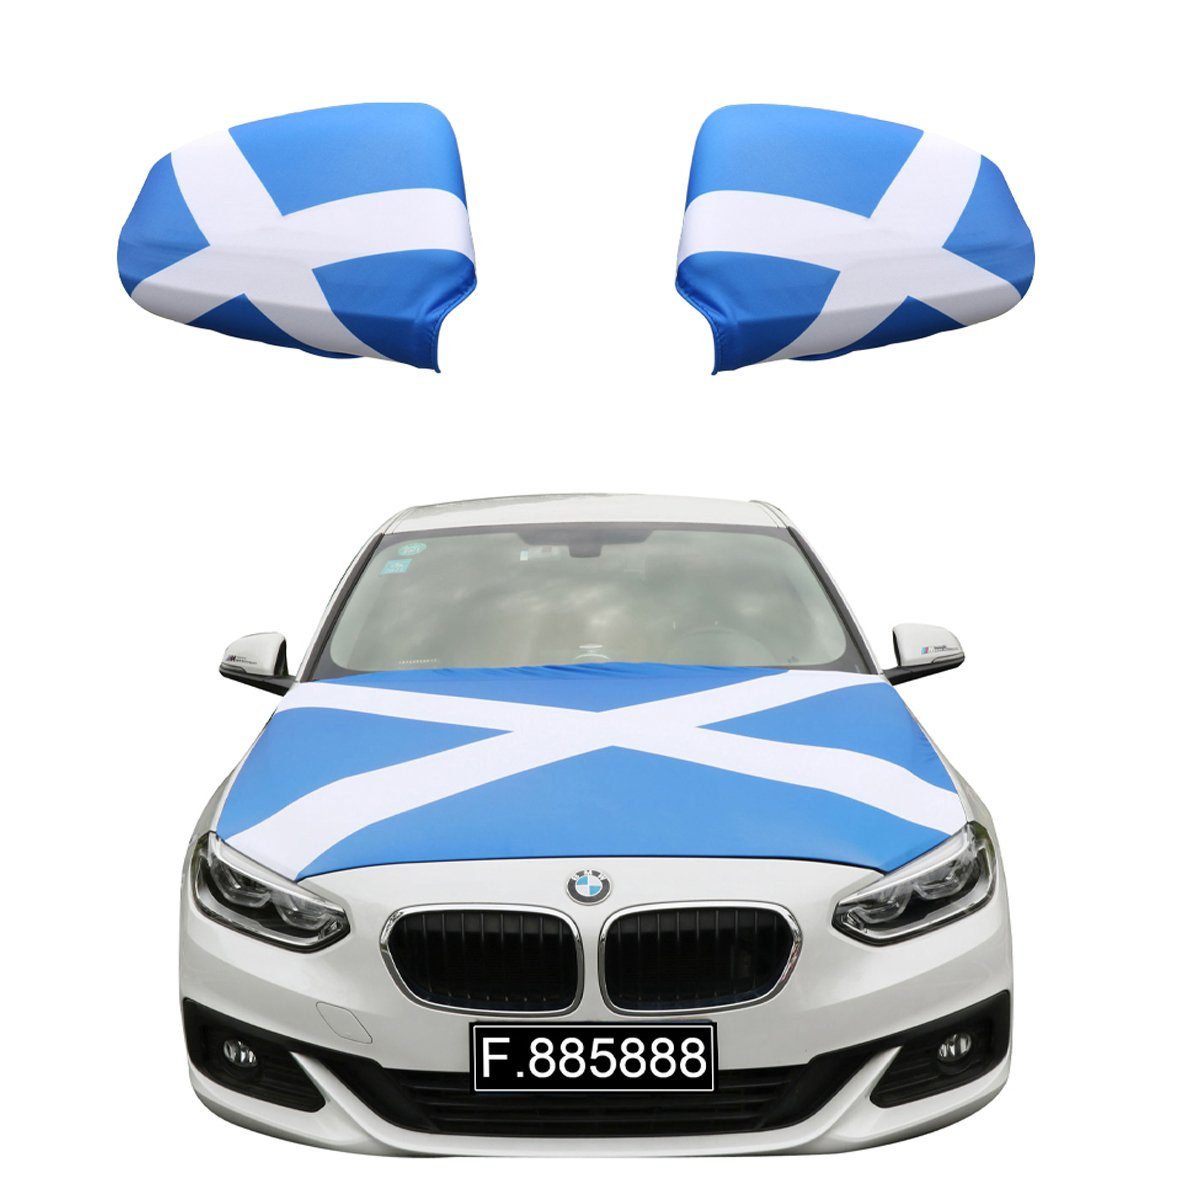 Sonia Originelli Fahne Scotland alle "Schottland" Flagge, Flagge: Modelle, Motorhaube Außenspiegel Motorhauben 115 für gängigen x PKW 150cm Fanset ca